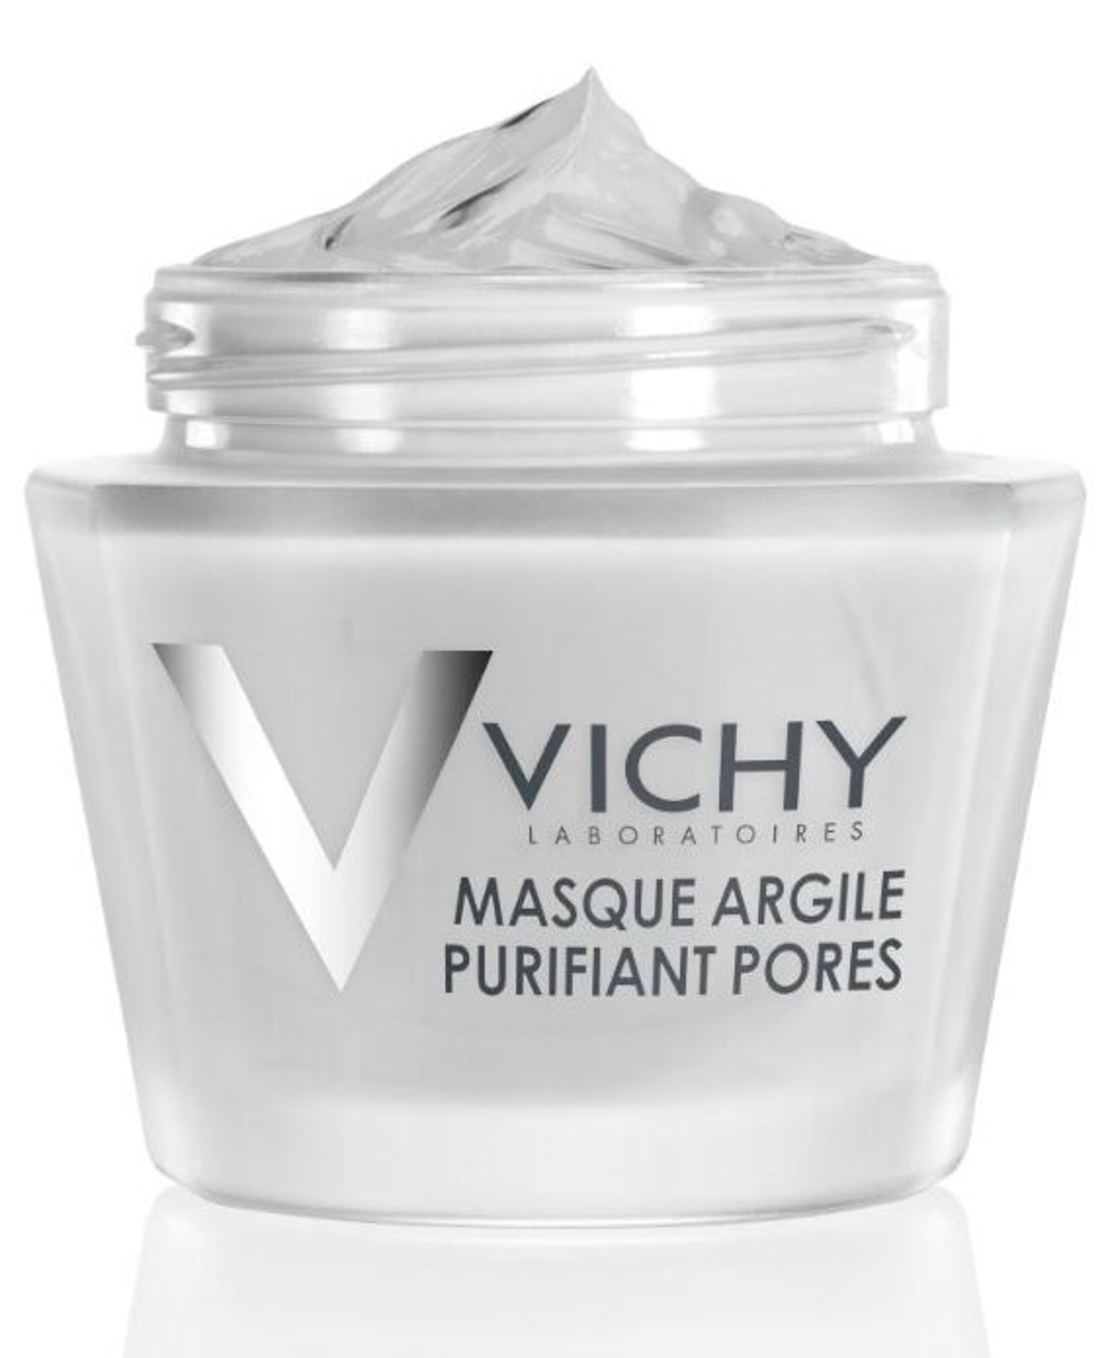 וישי - מסכת חימר מינרלית Vichy Masque Argile 